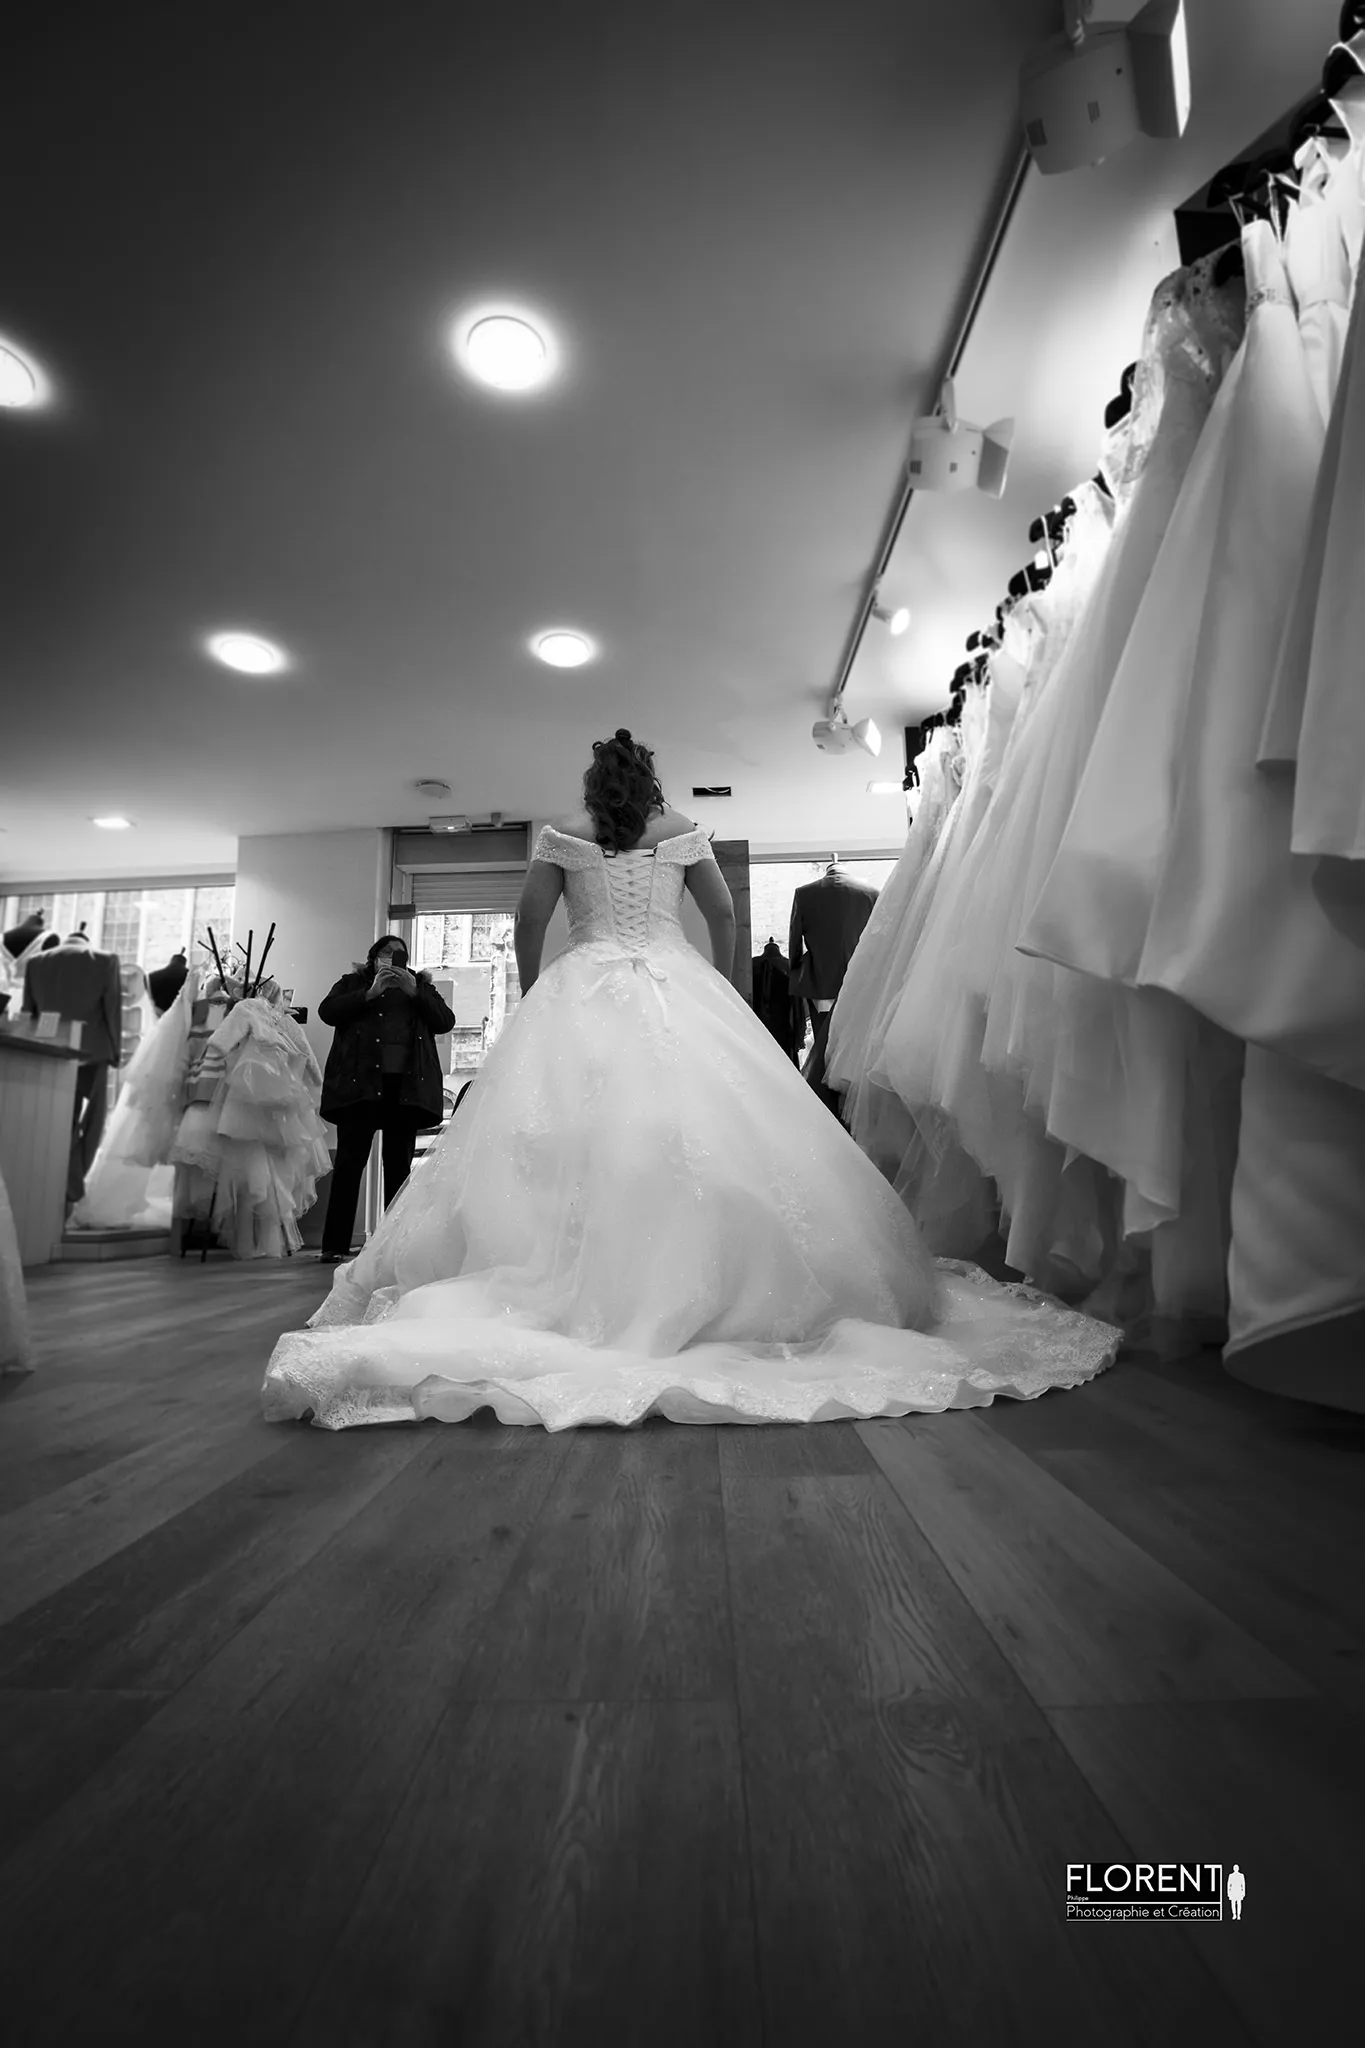 photographe mariage essayage de la mariée boulogne sur mer en noir et blanc florent photographe boulogne sur mer lille le touquet paris calais saint